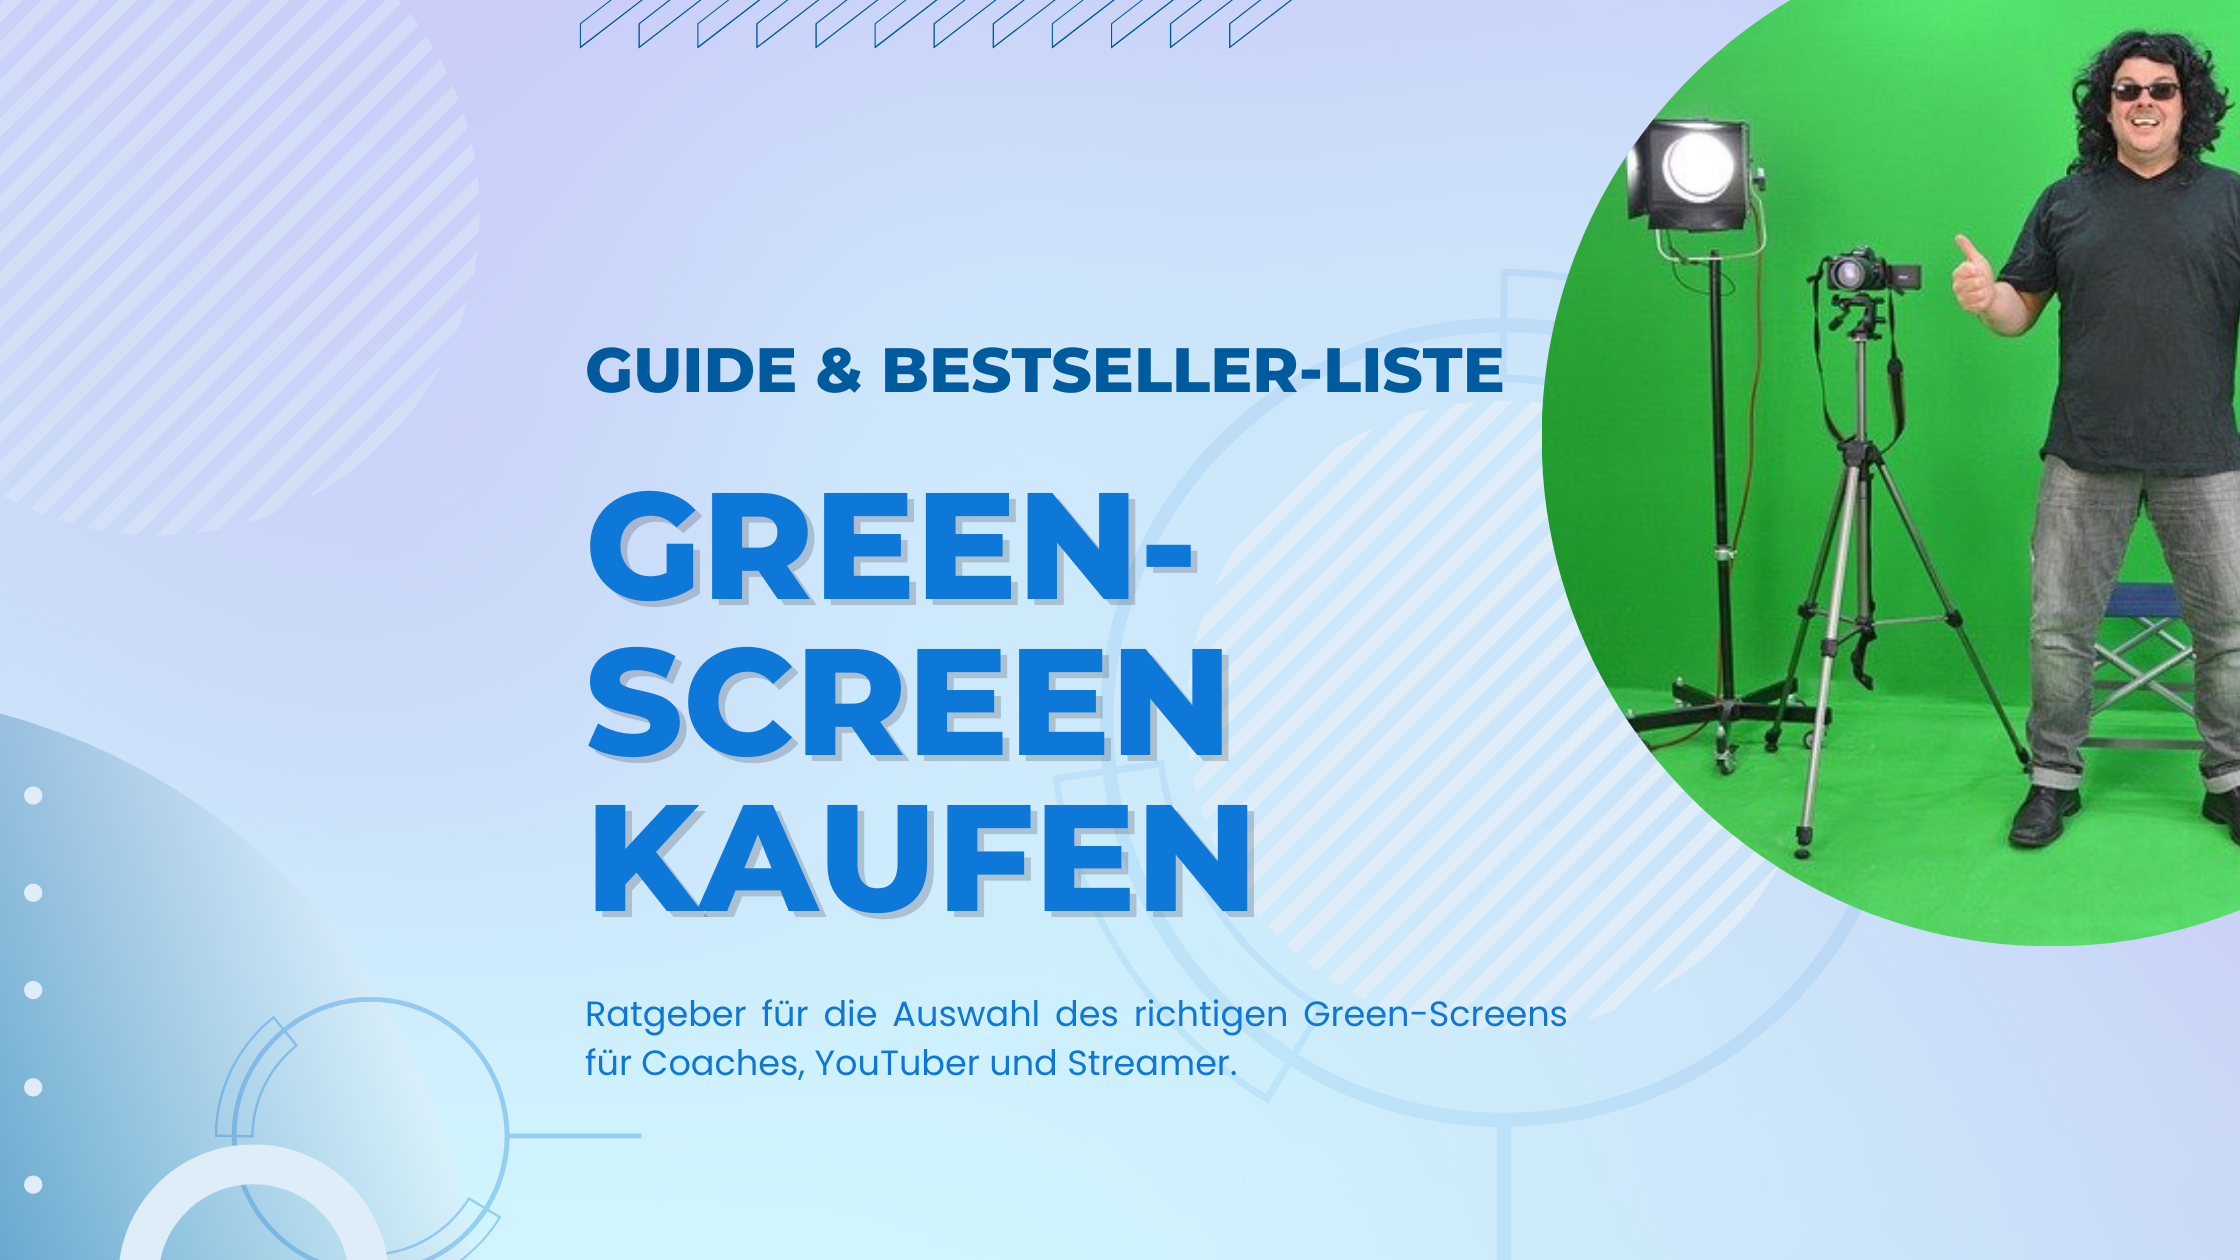 Einfach den Hintergrund aus Videos und Fotos entfernen - kein Problem mit diesem Ratgeber zum Greenscreen kaufen inkl. Bestseller und Guide.